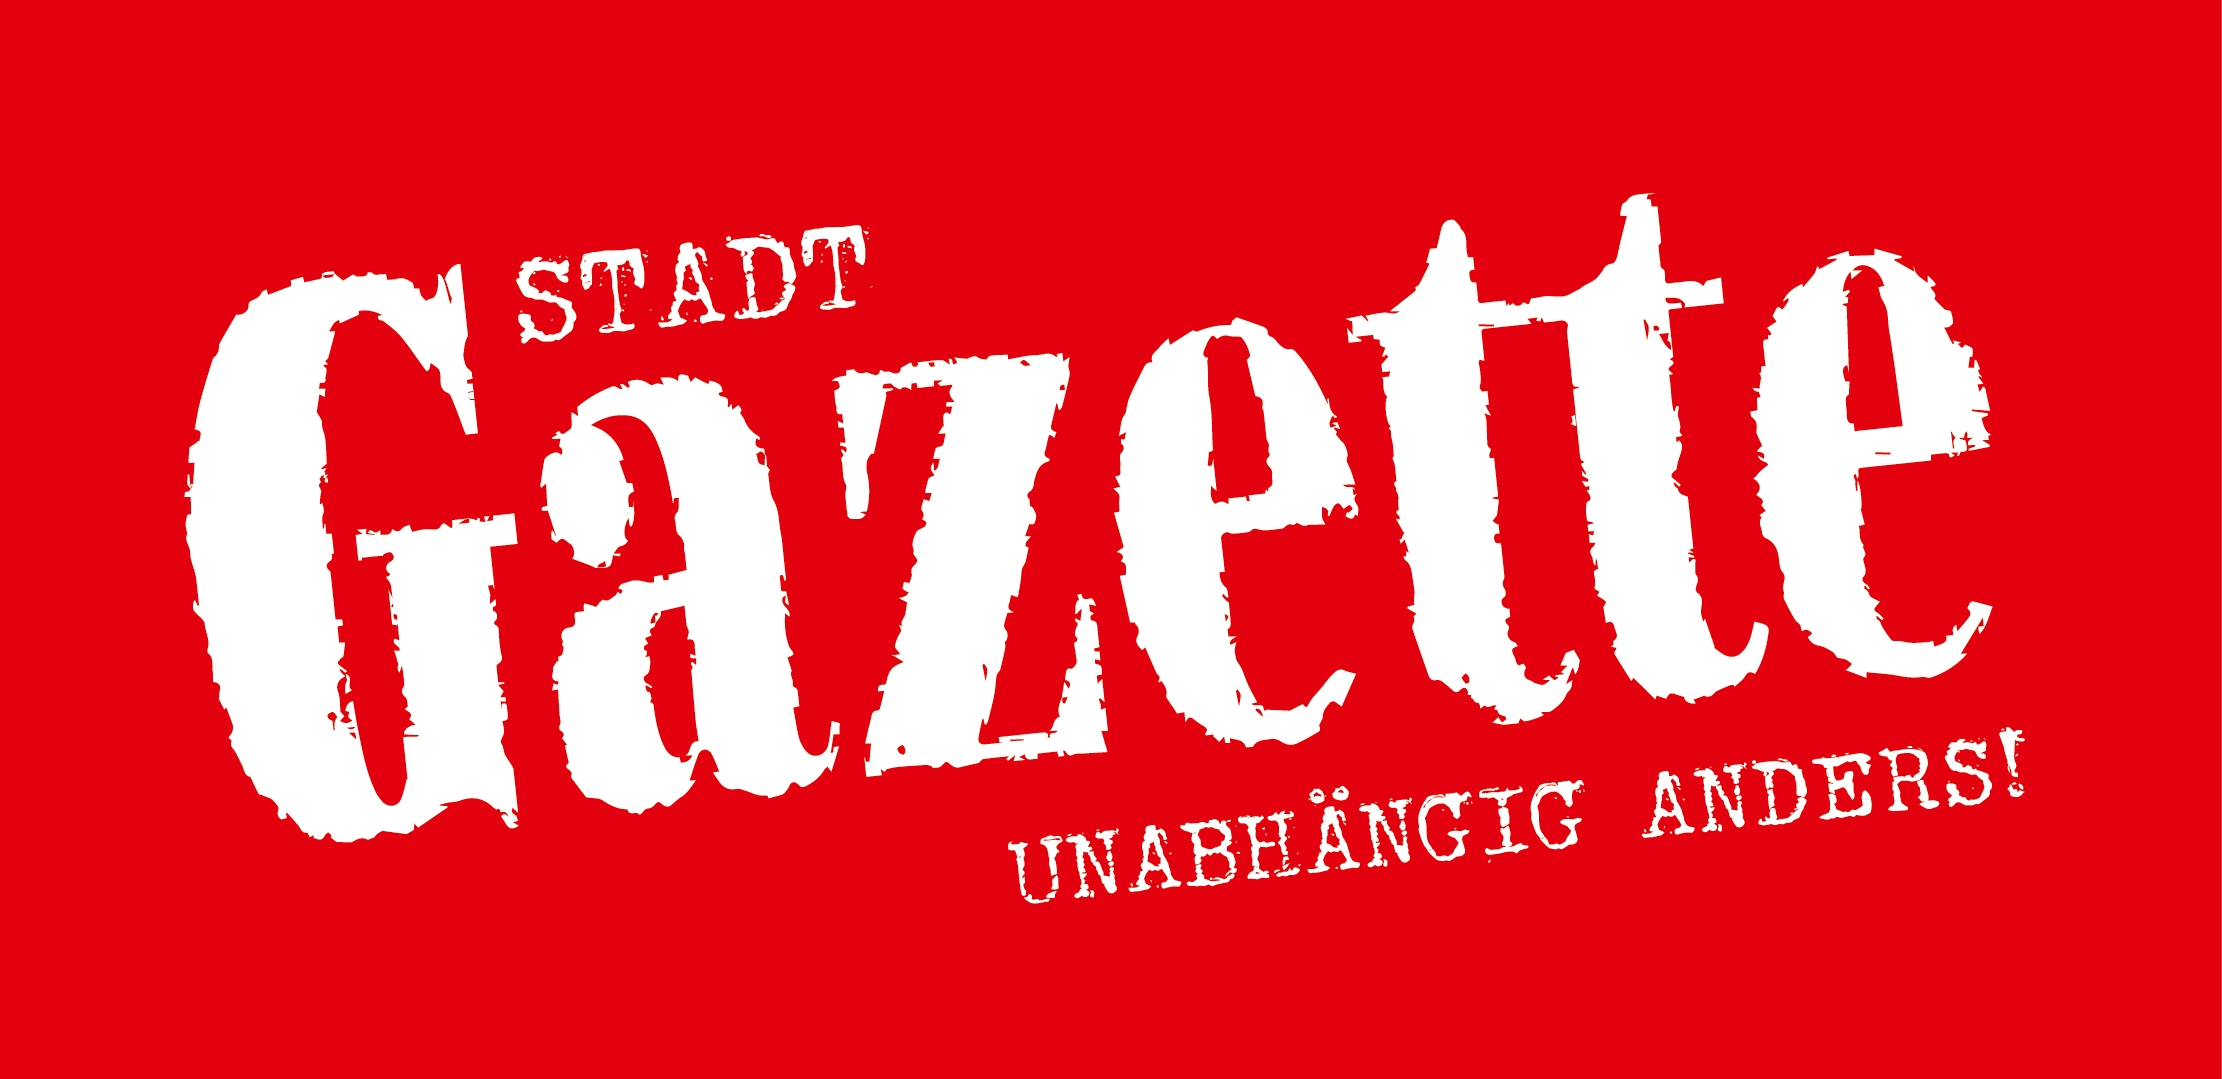 Stadt Gazette -